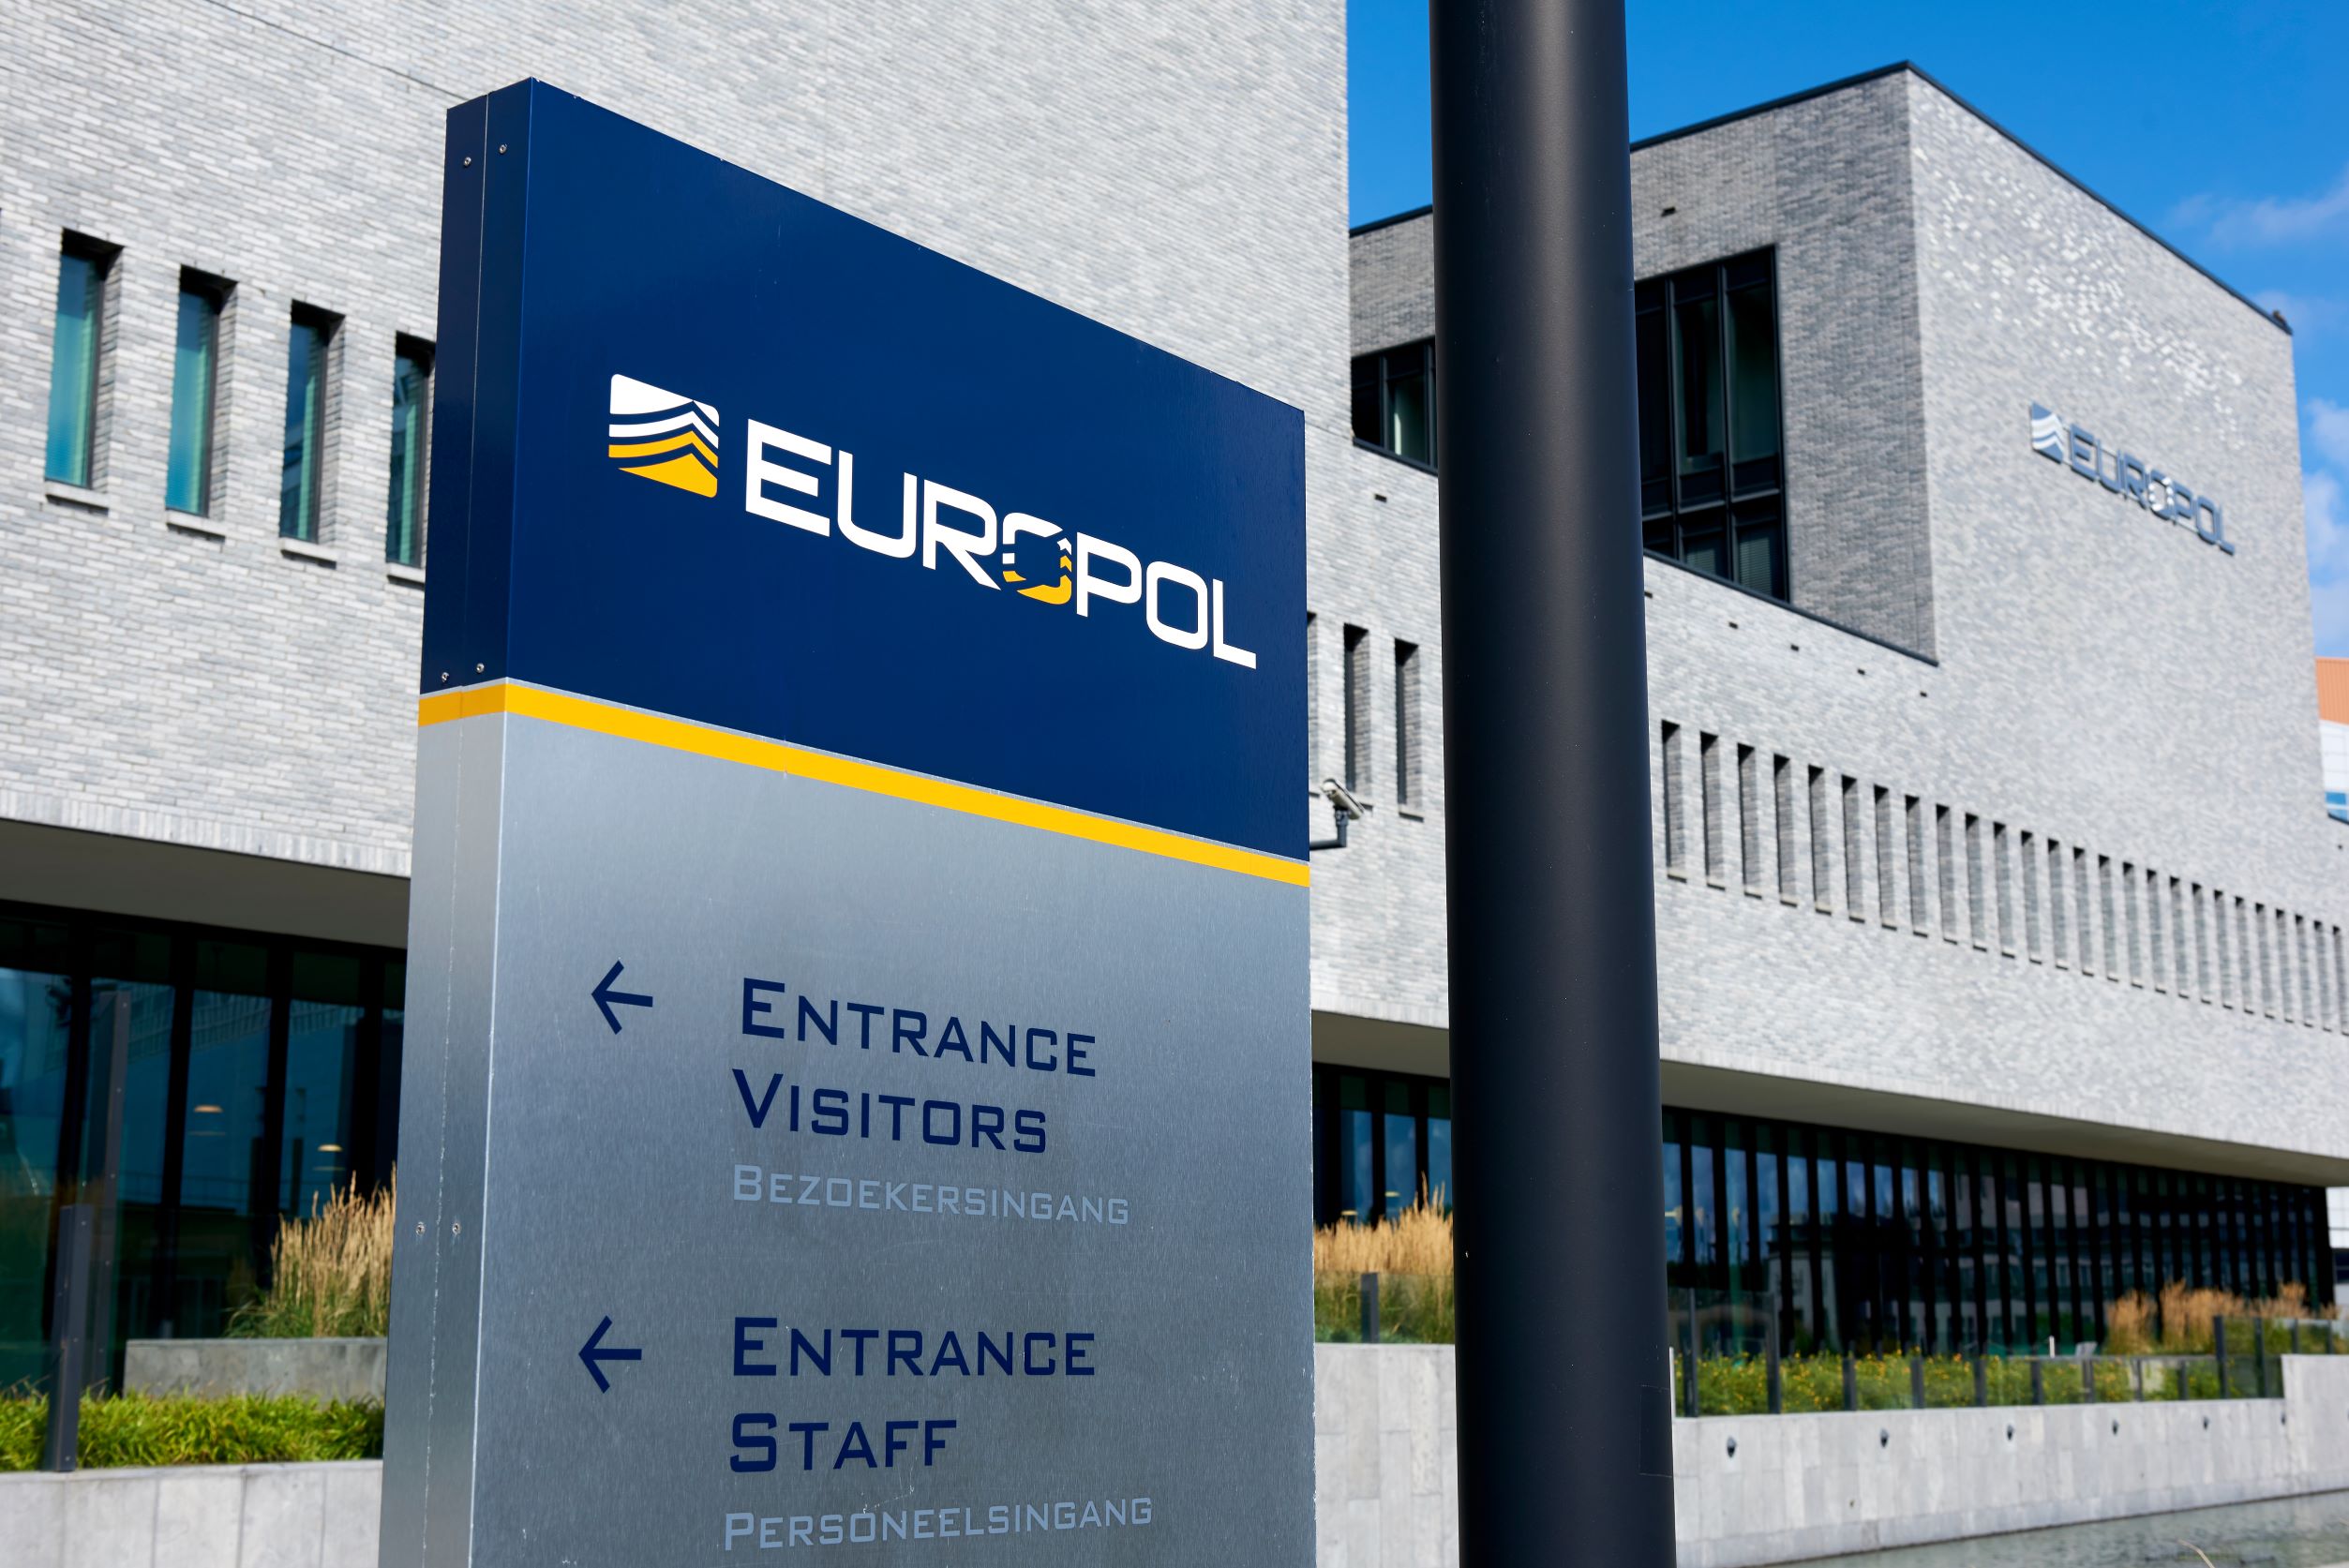 Μυστήριο στη Χάγη: Εκλεψαν απόρρητα έγγραφα από την έδρα της Europol